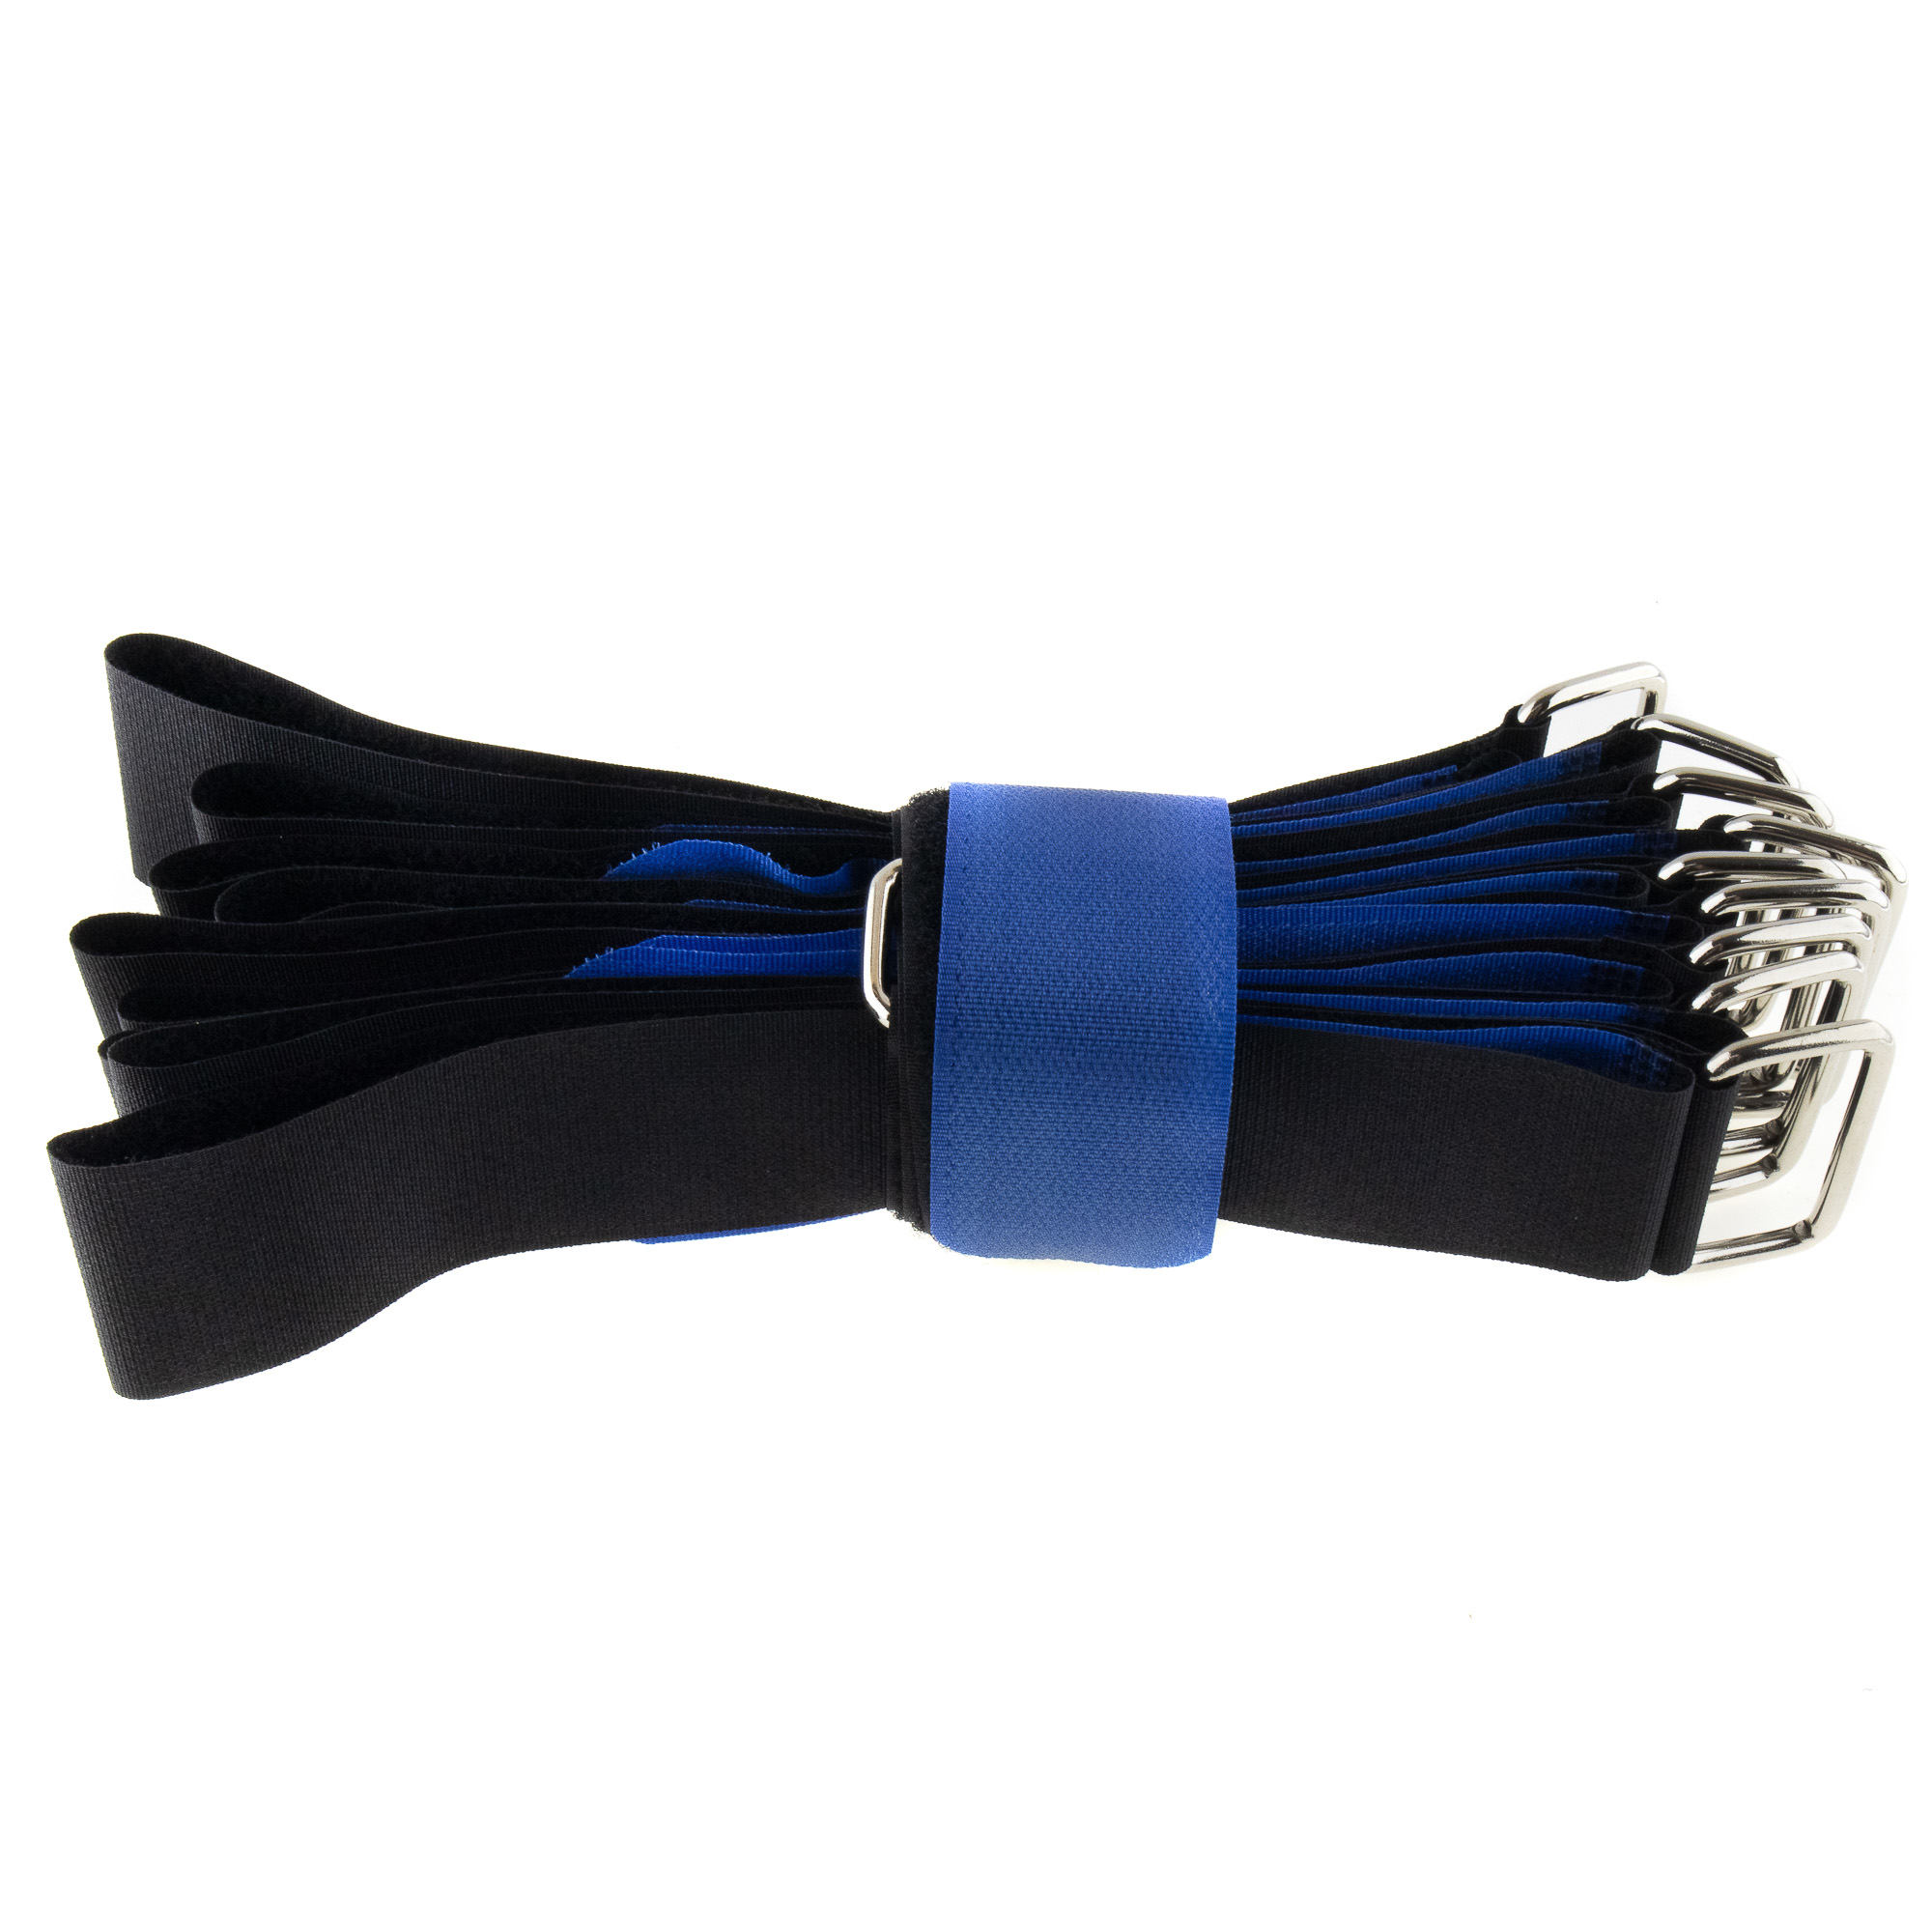 Hook-and-loop strap 800x38, black/blue, crossed, 10PCS